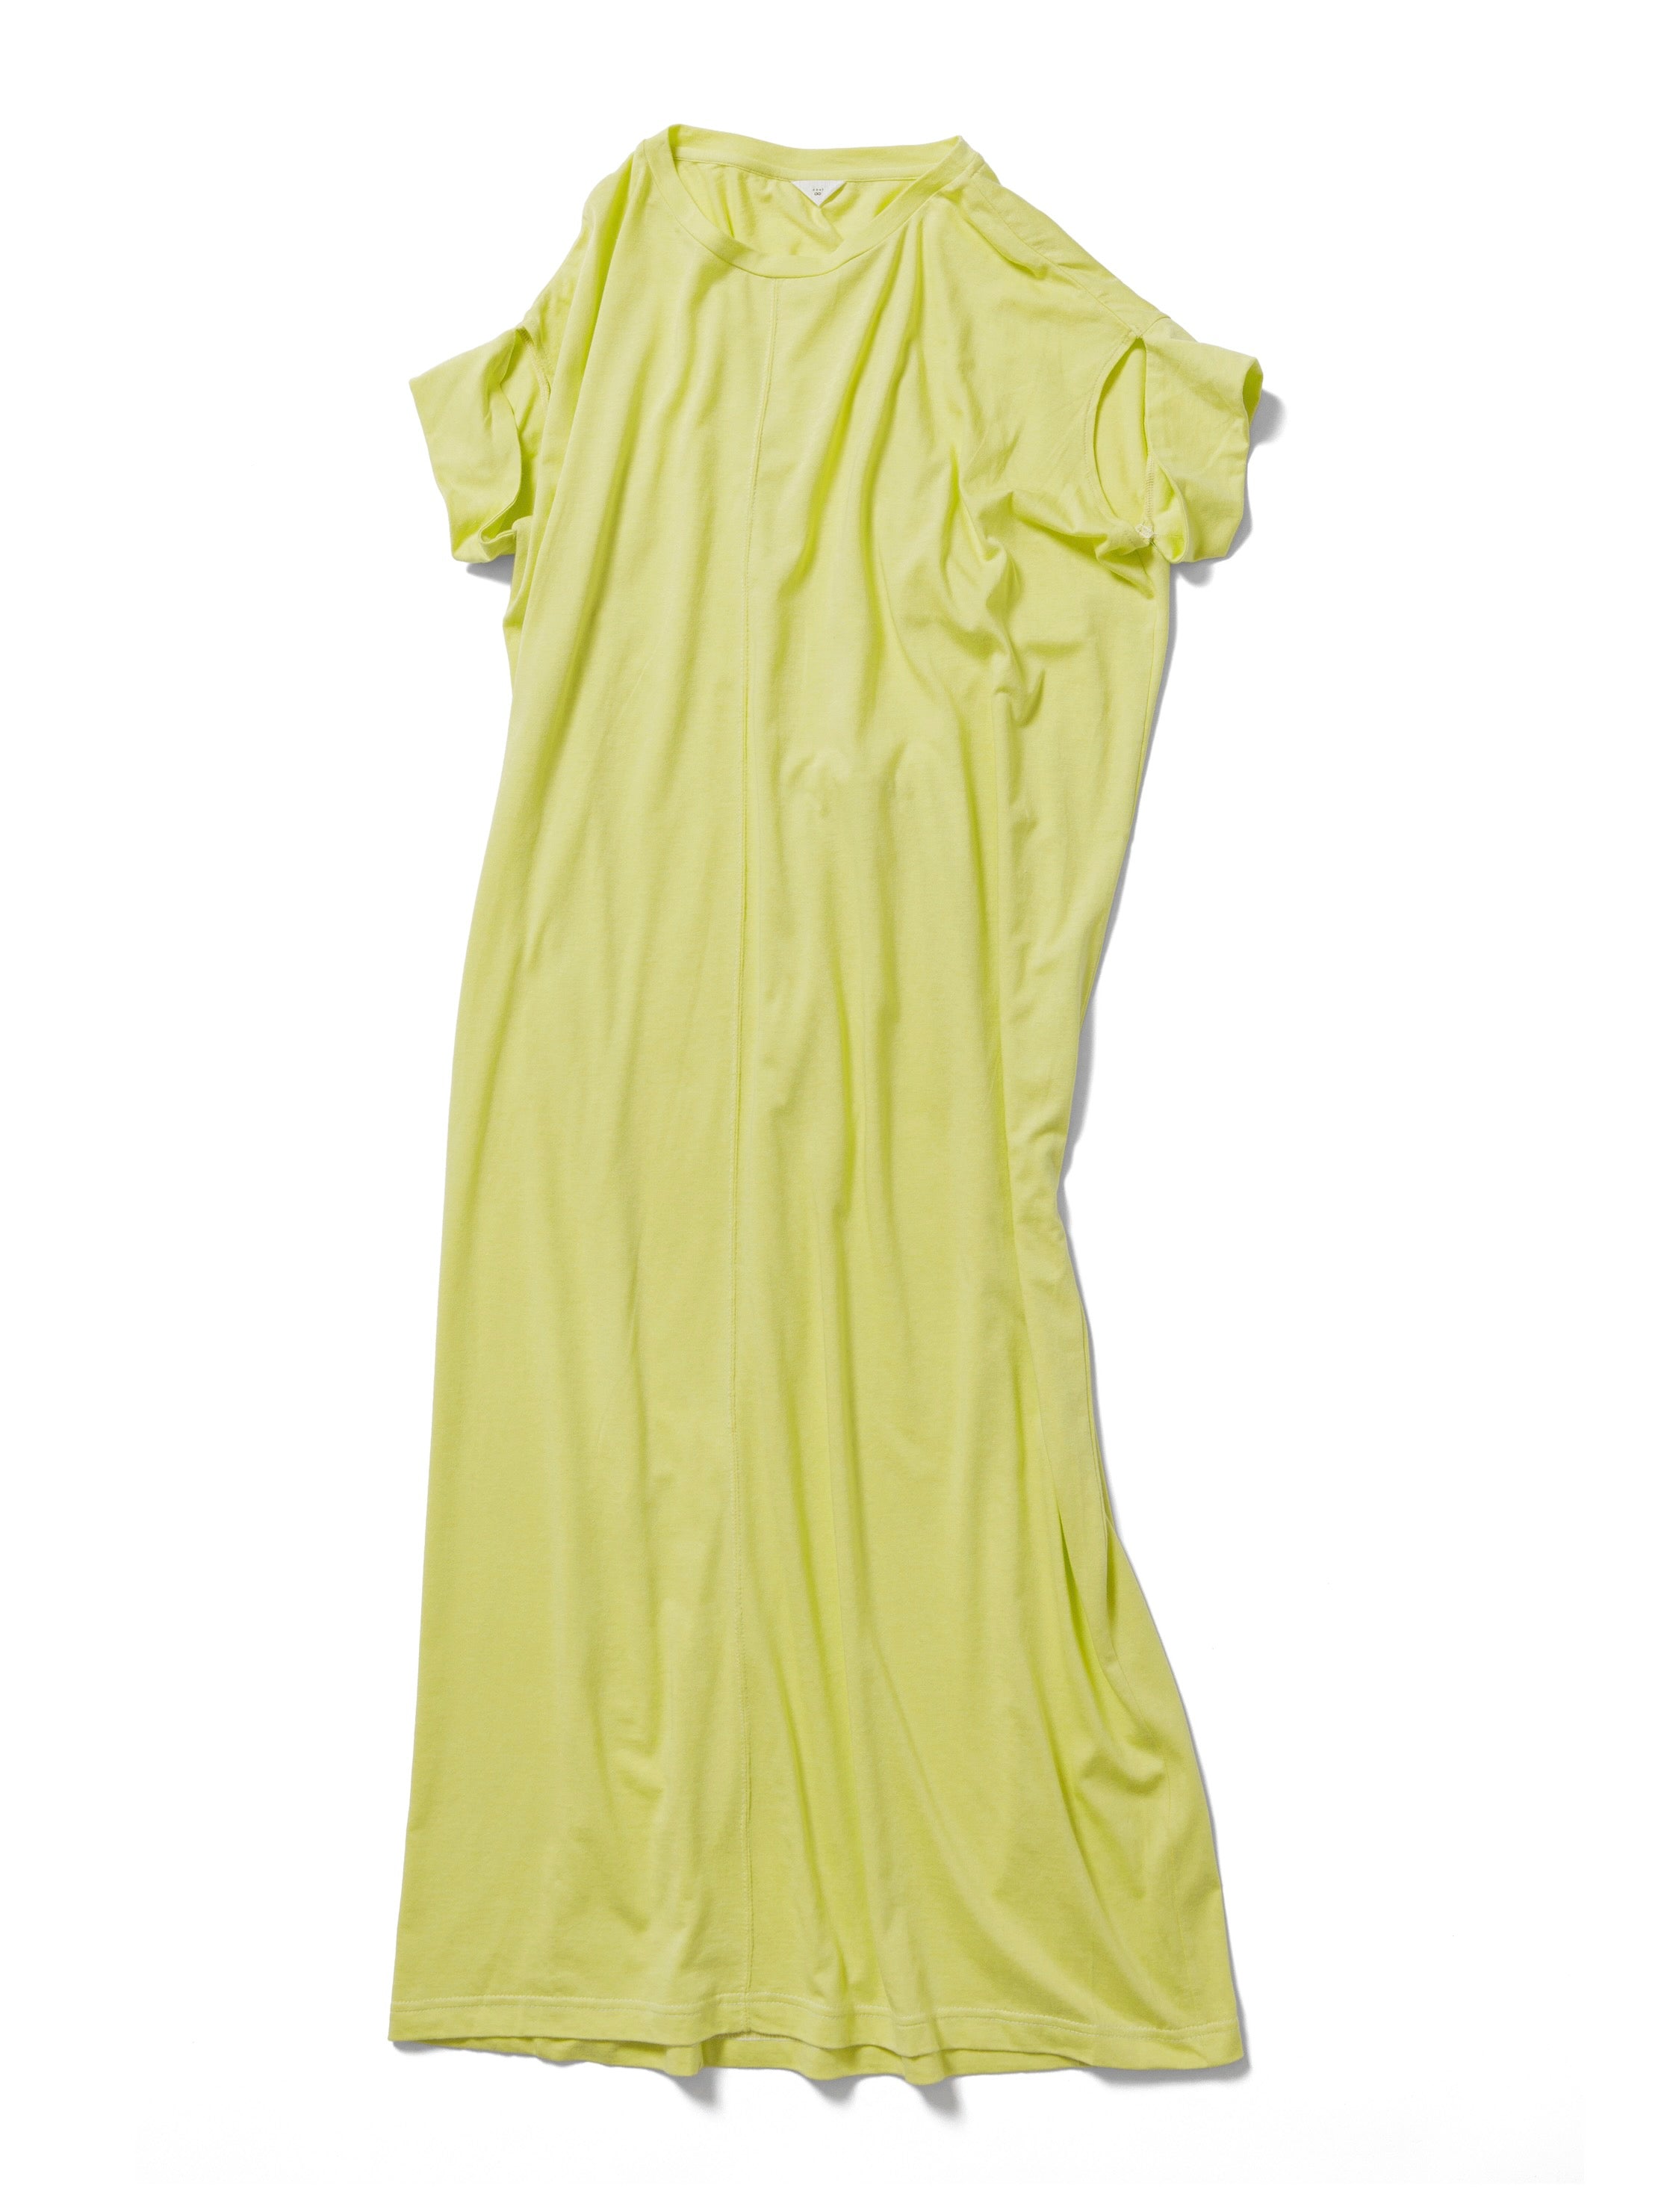 Cotton rayon long dress / LIME